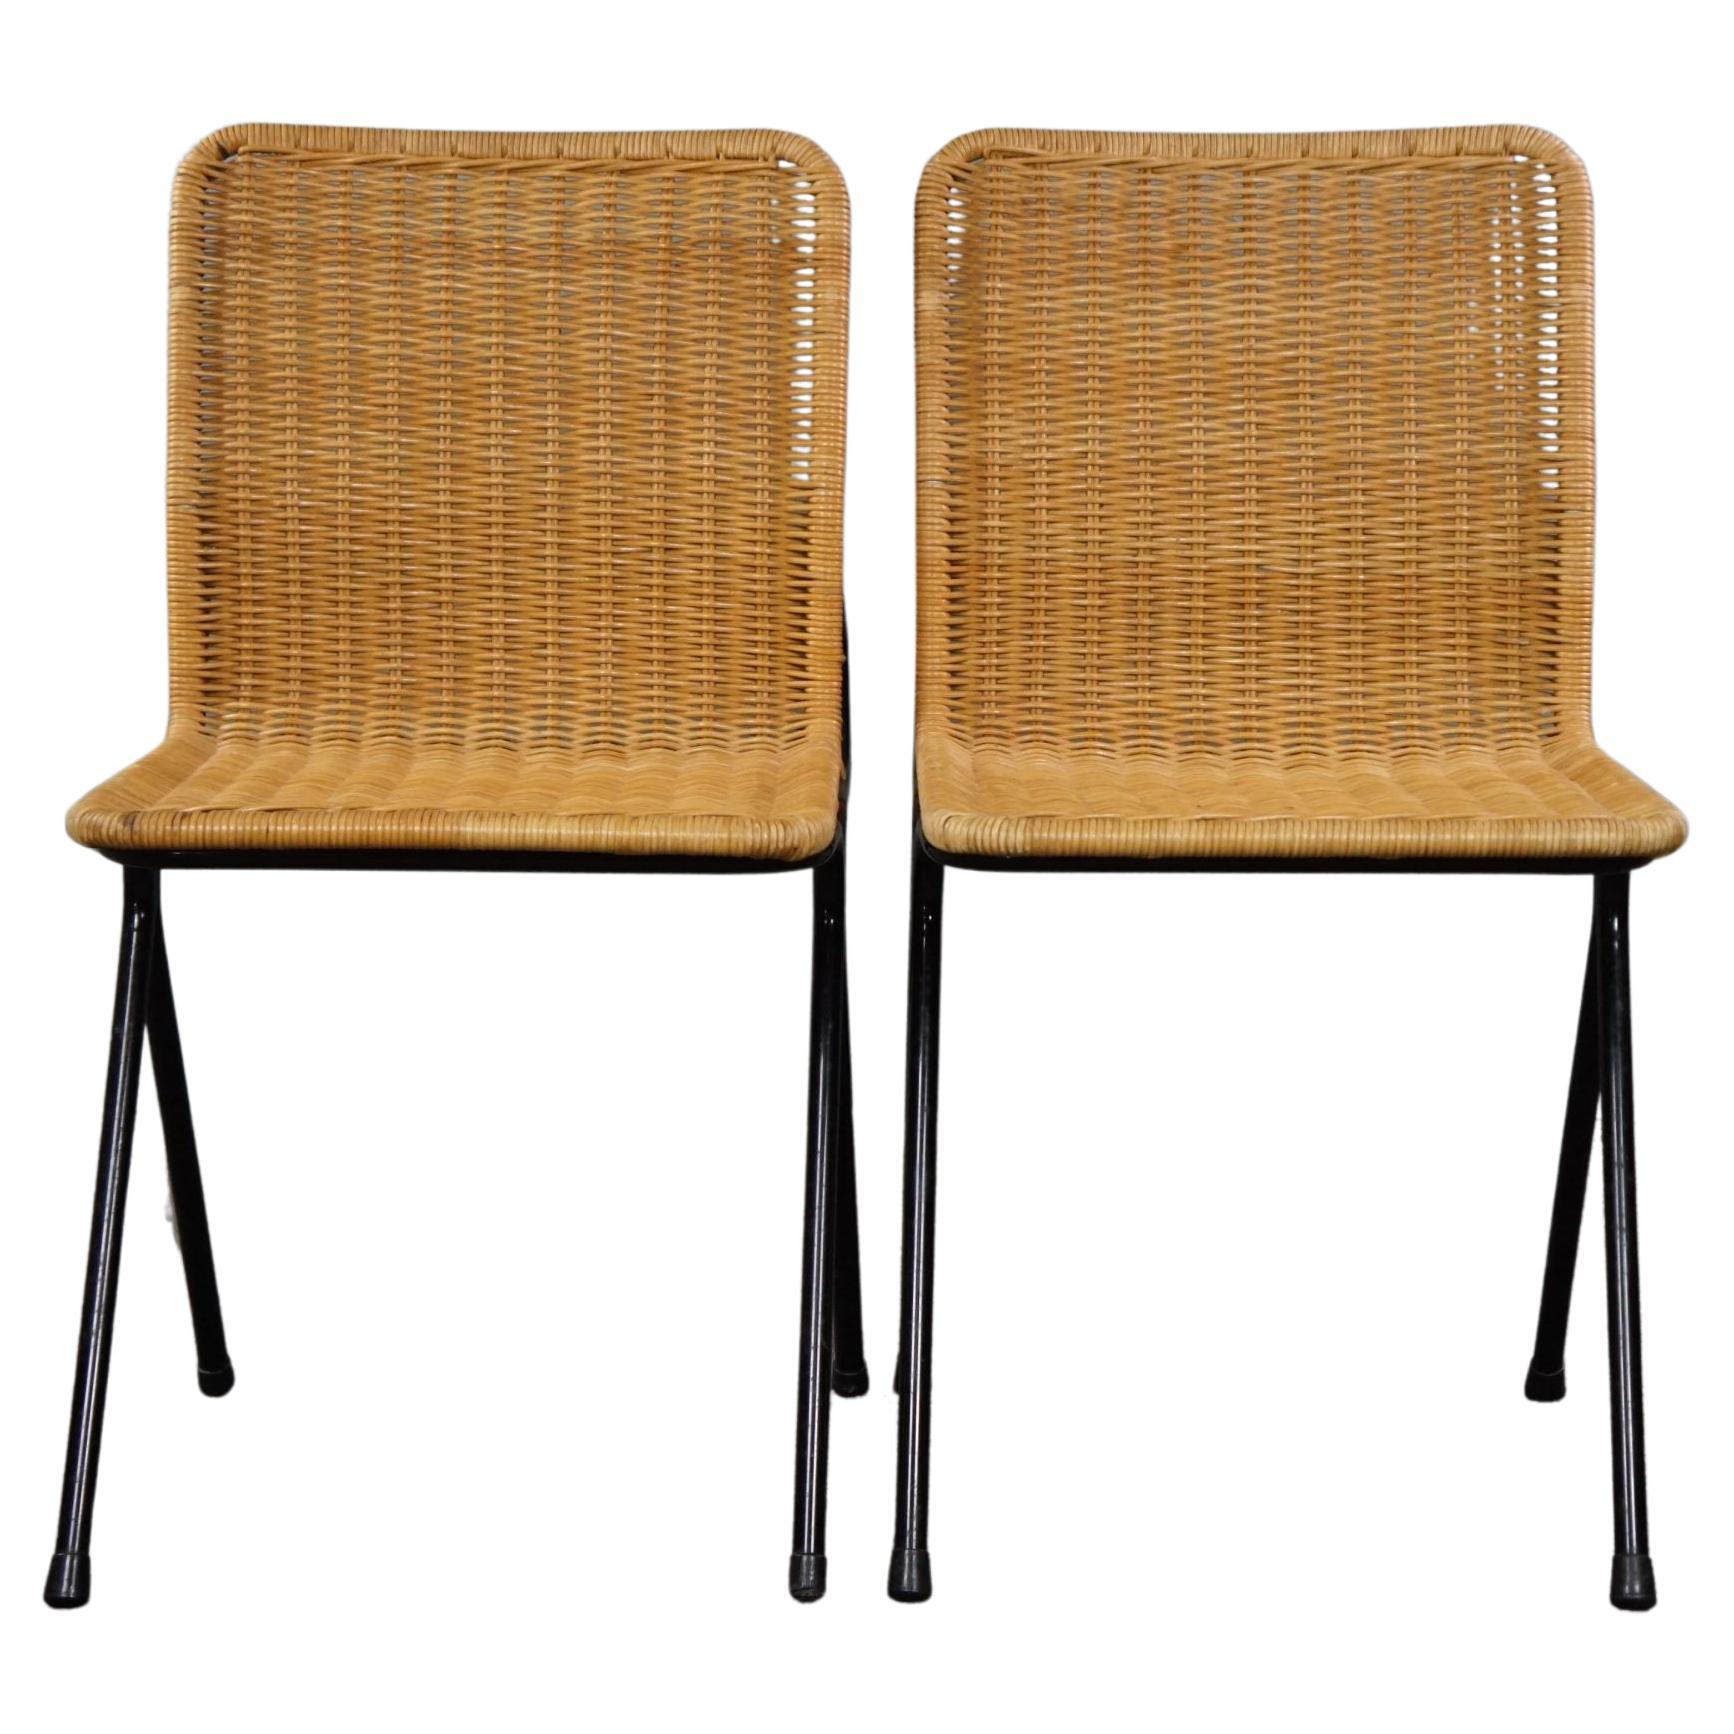 Set of two vintage rattan design chairs, Dirk van Sliedrecht, 1960s For Sale